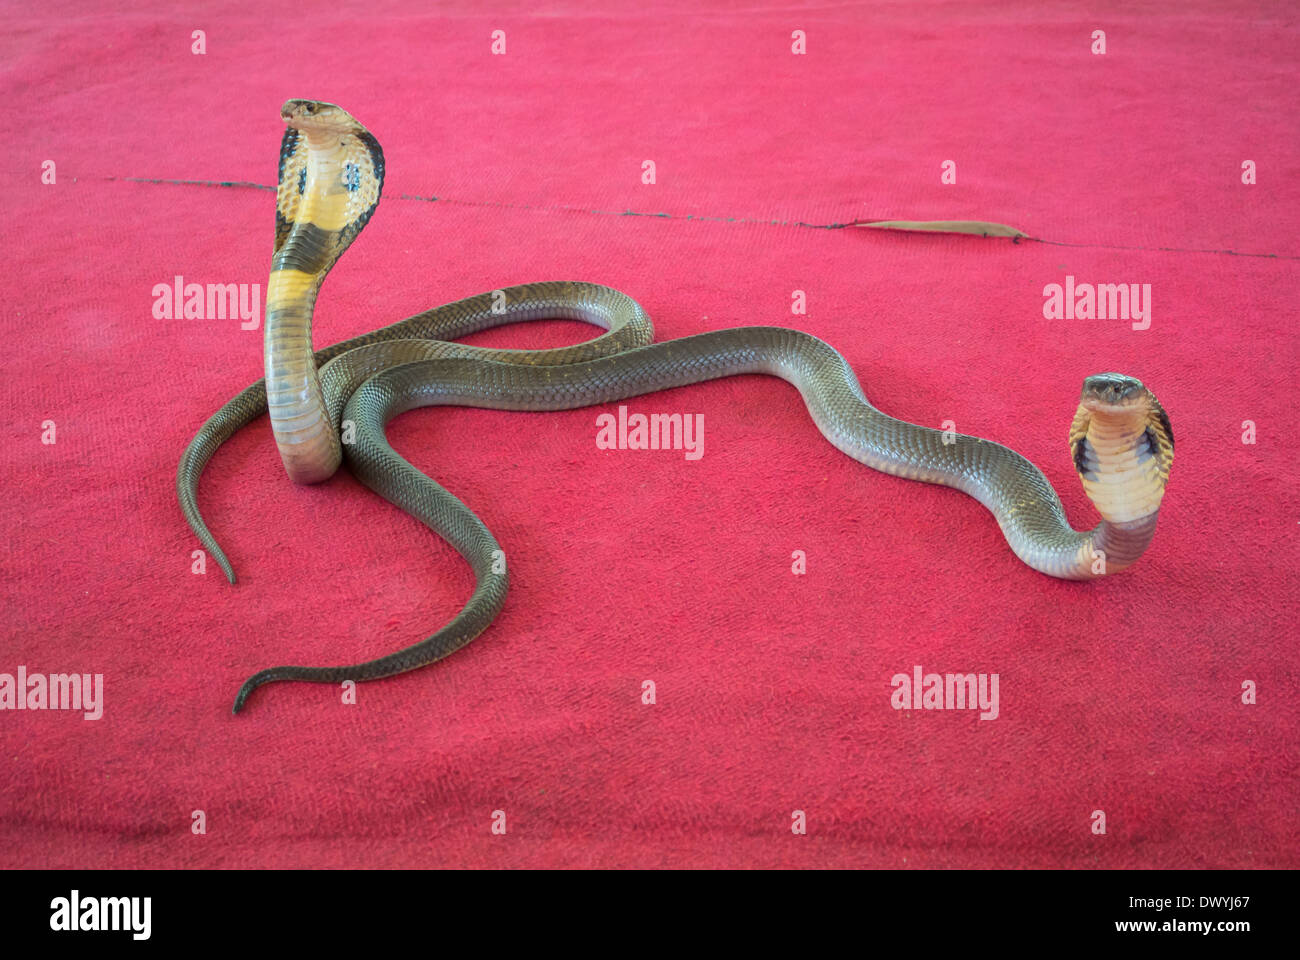 La Thaïlande, deux cobras sur tapis rouge Photo Stock - Alamy